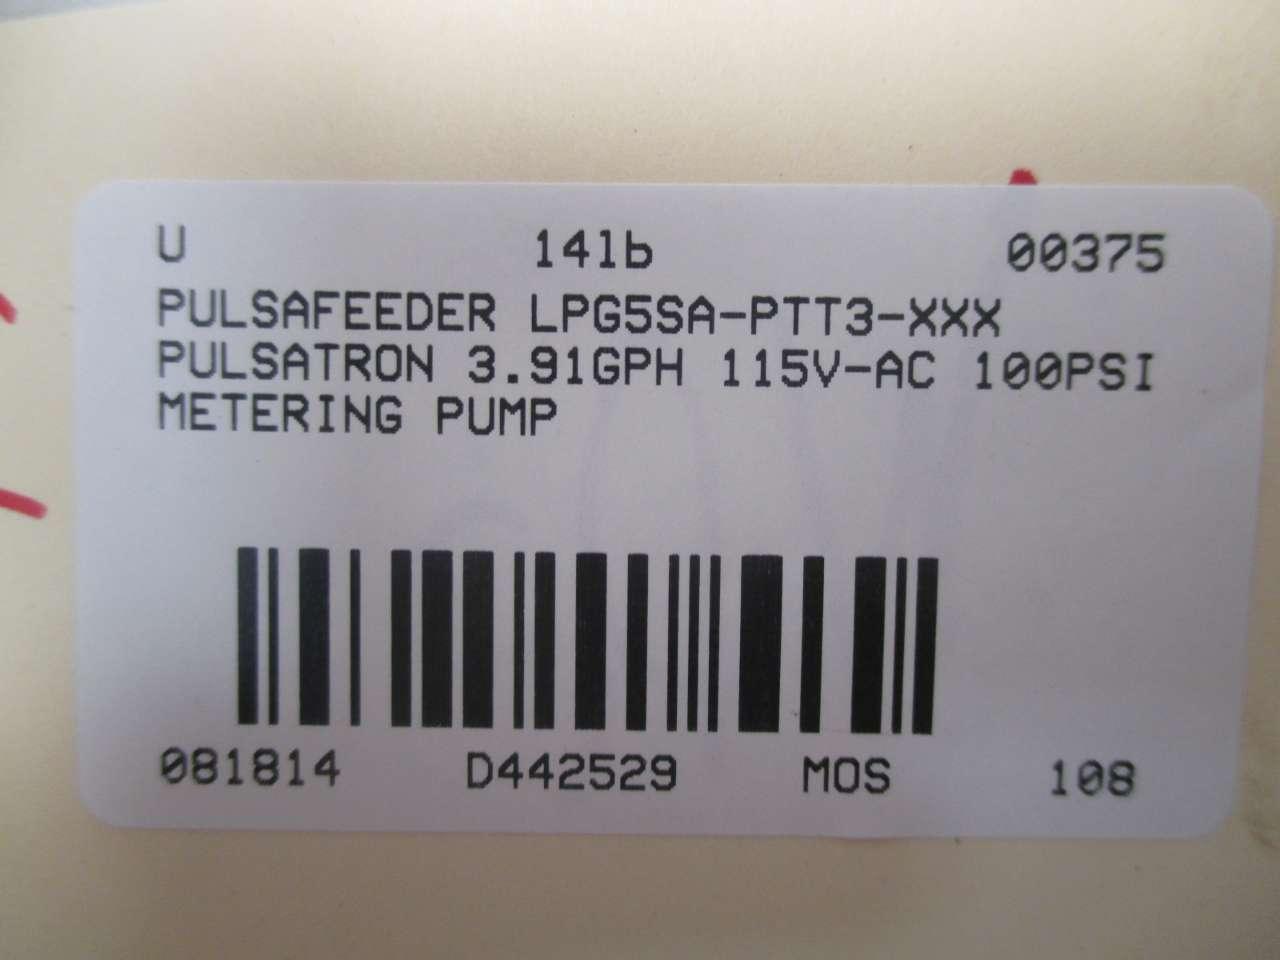 Pulsafeeder LPG5SA-PTC3-WA005